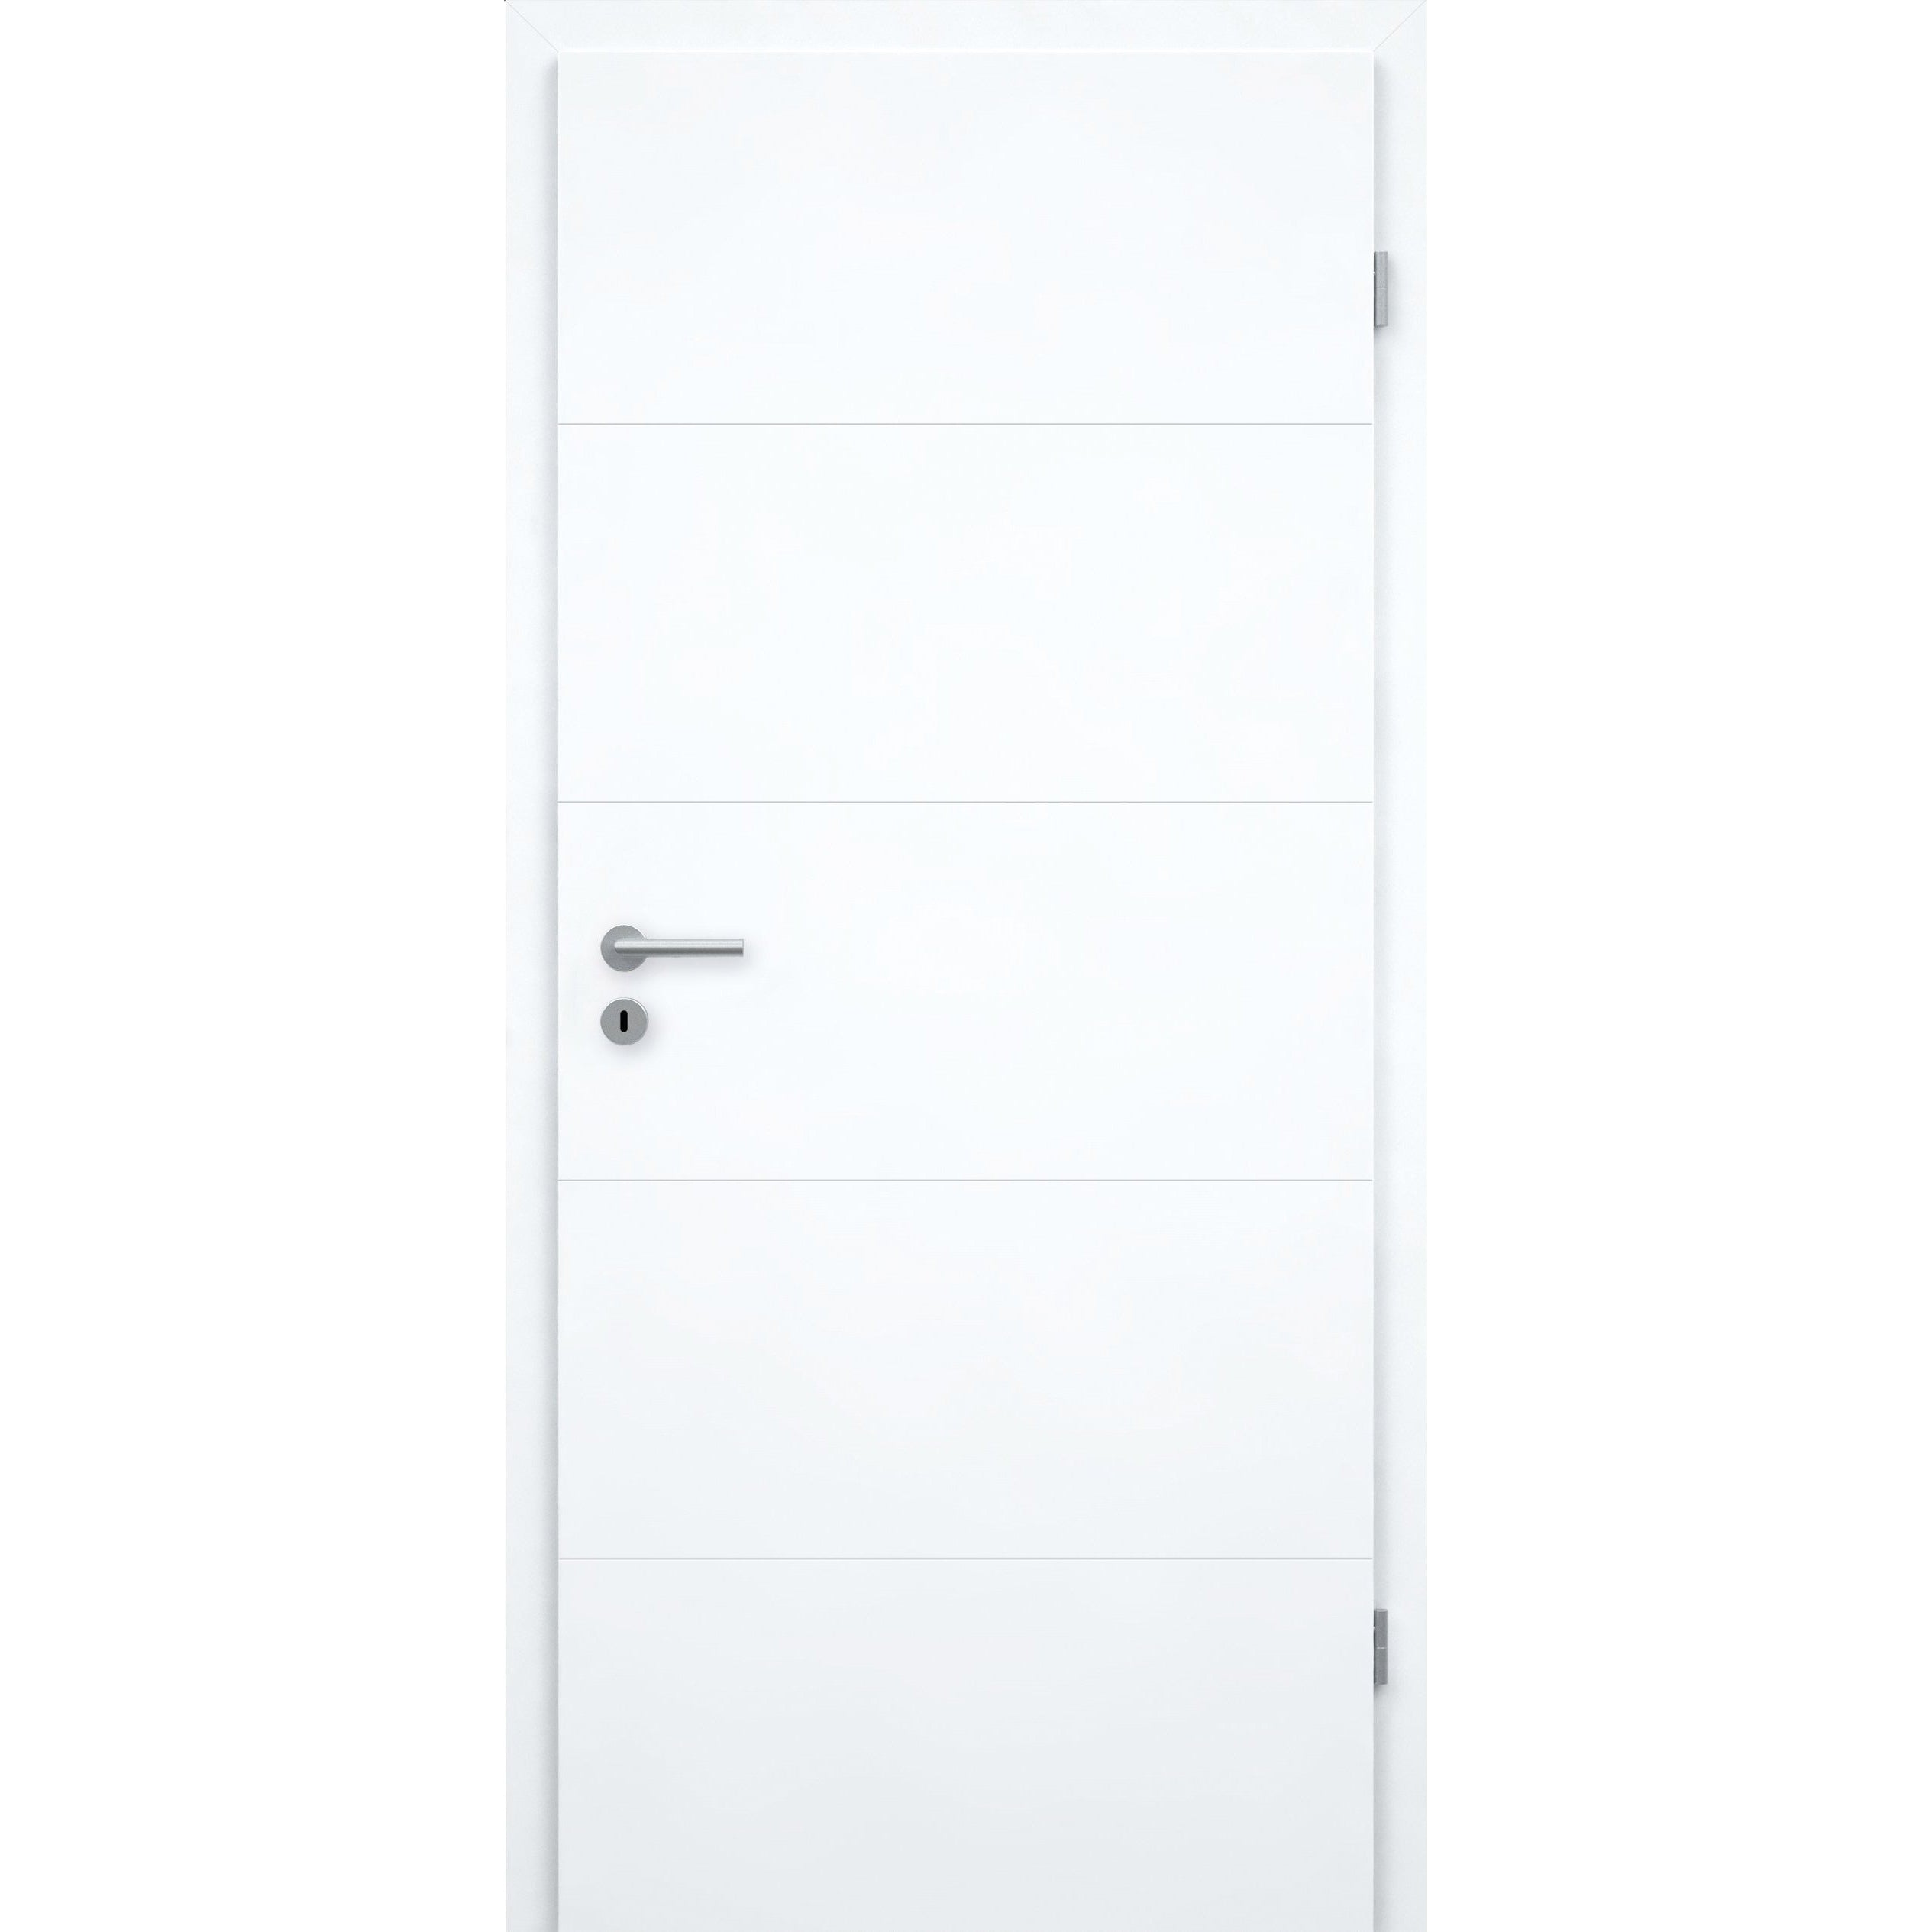 Wohnungseingangstür brillant-weiß 4 Rillen Designkante SK2 / KK3 - Modell Designtür Q43